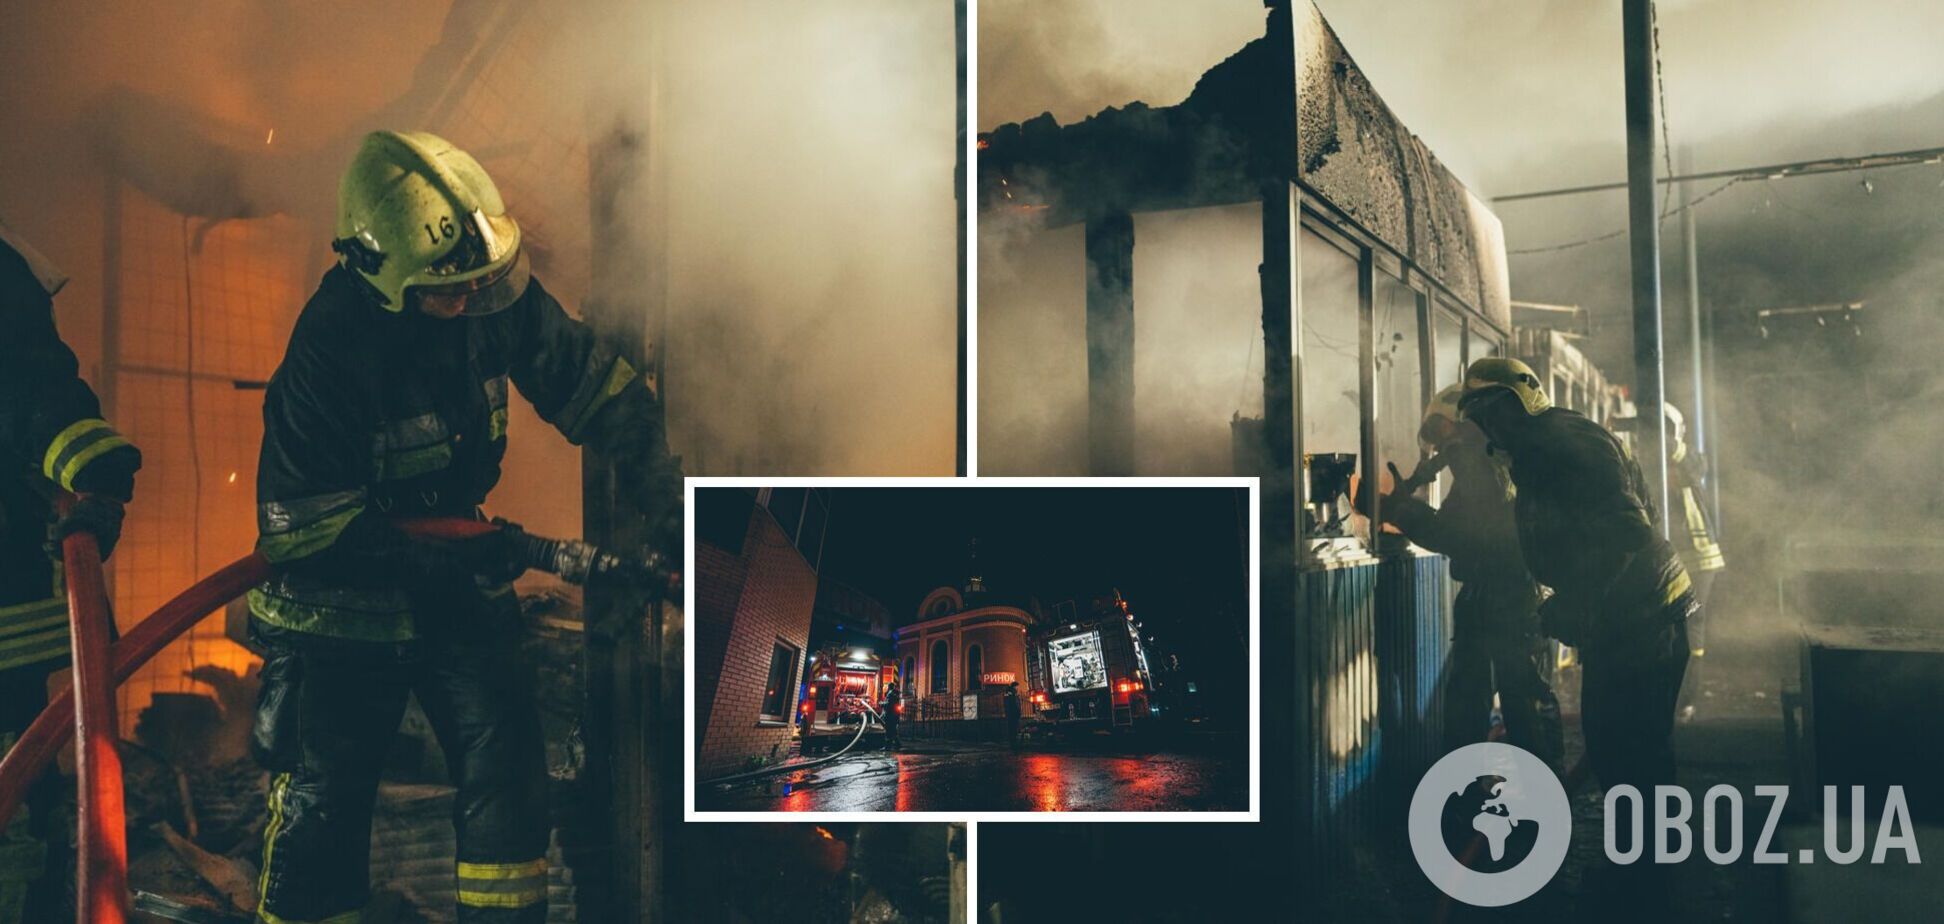 Тушение осложнялось плохим состоянием пожарных гидрантов